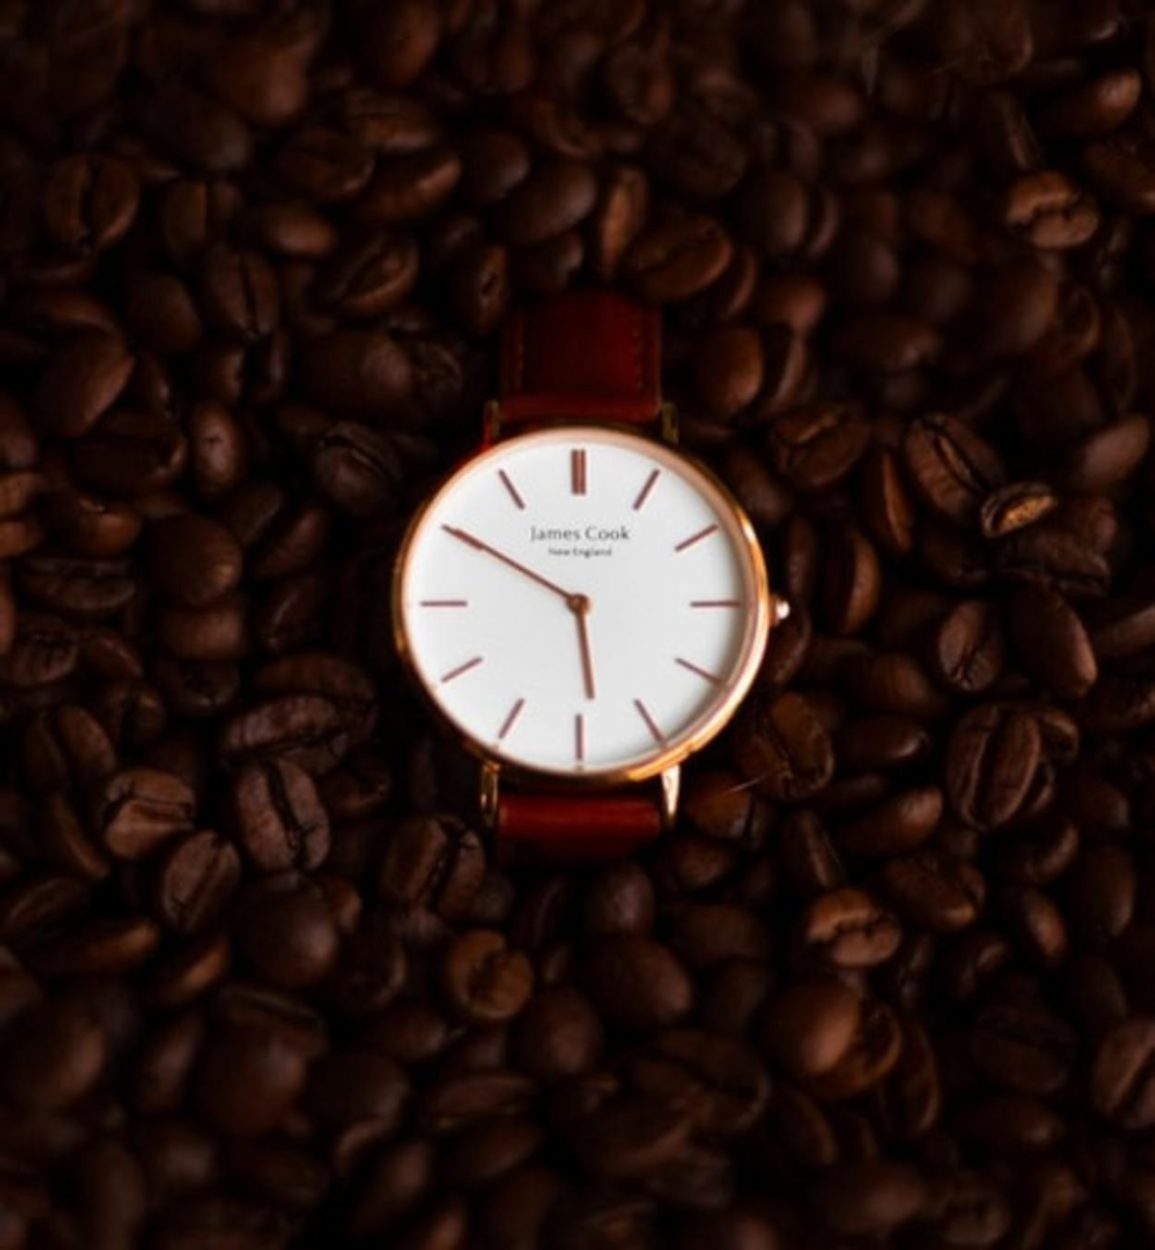 A clock and caffeine